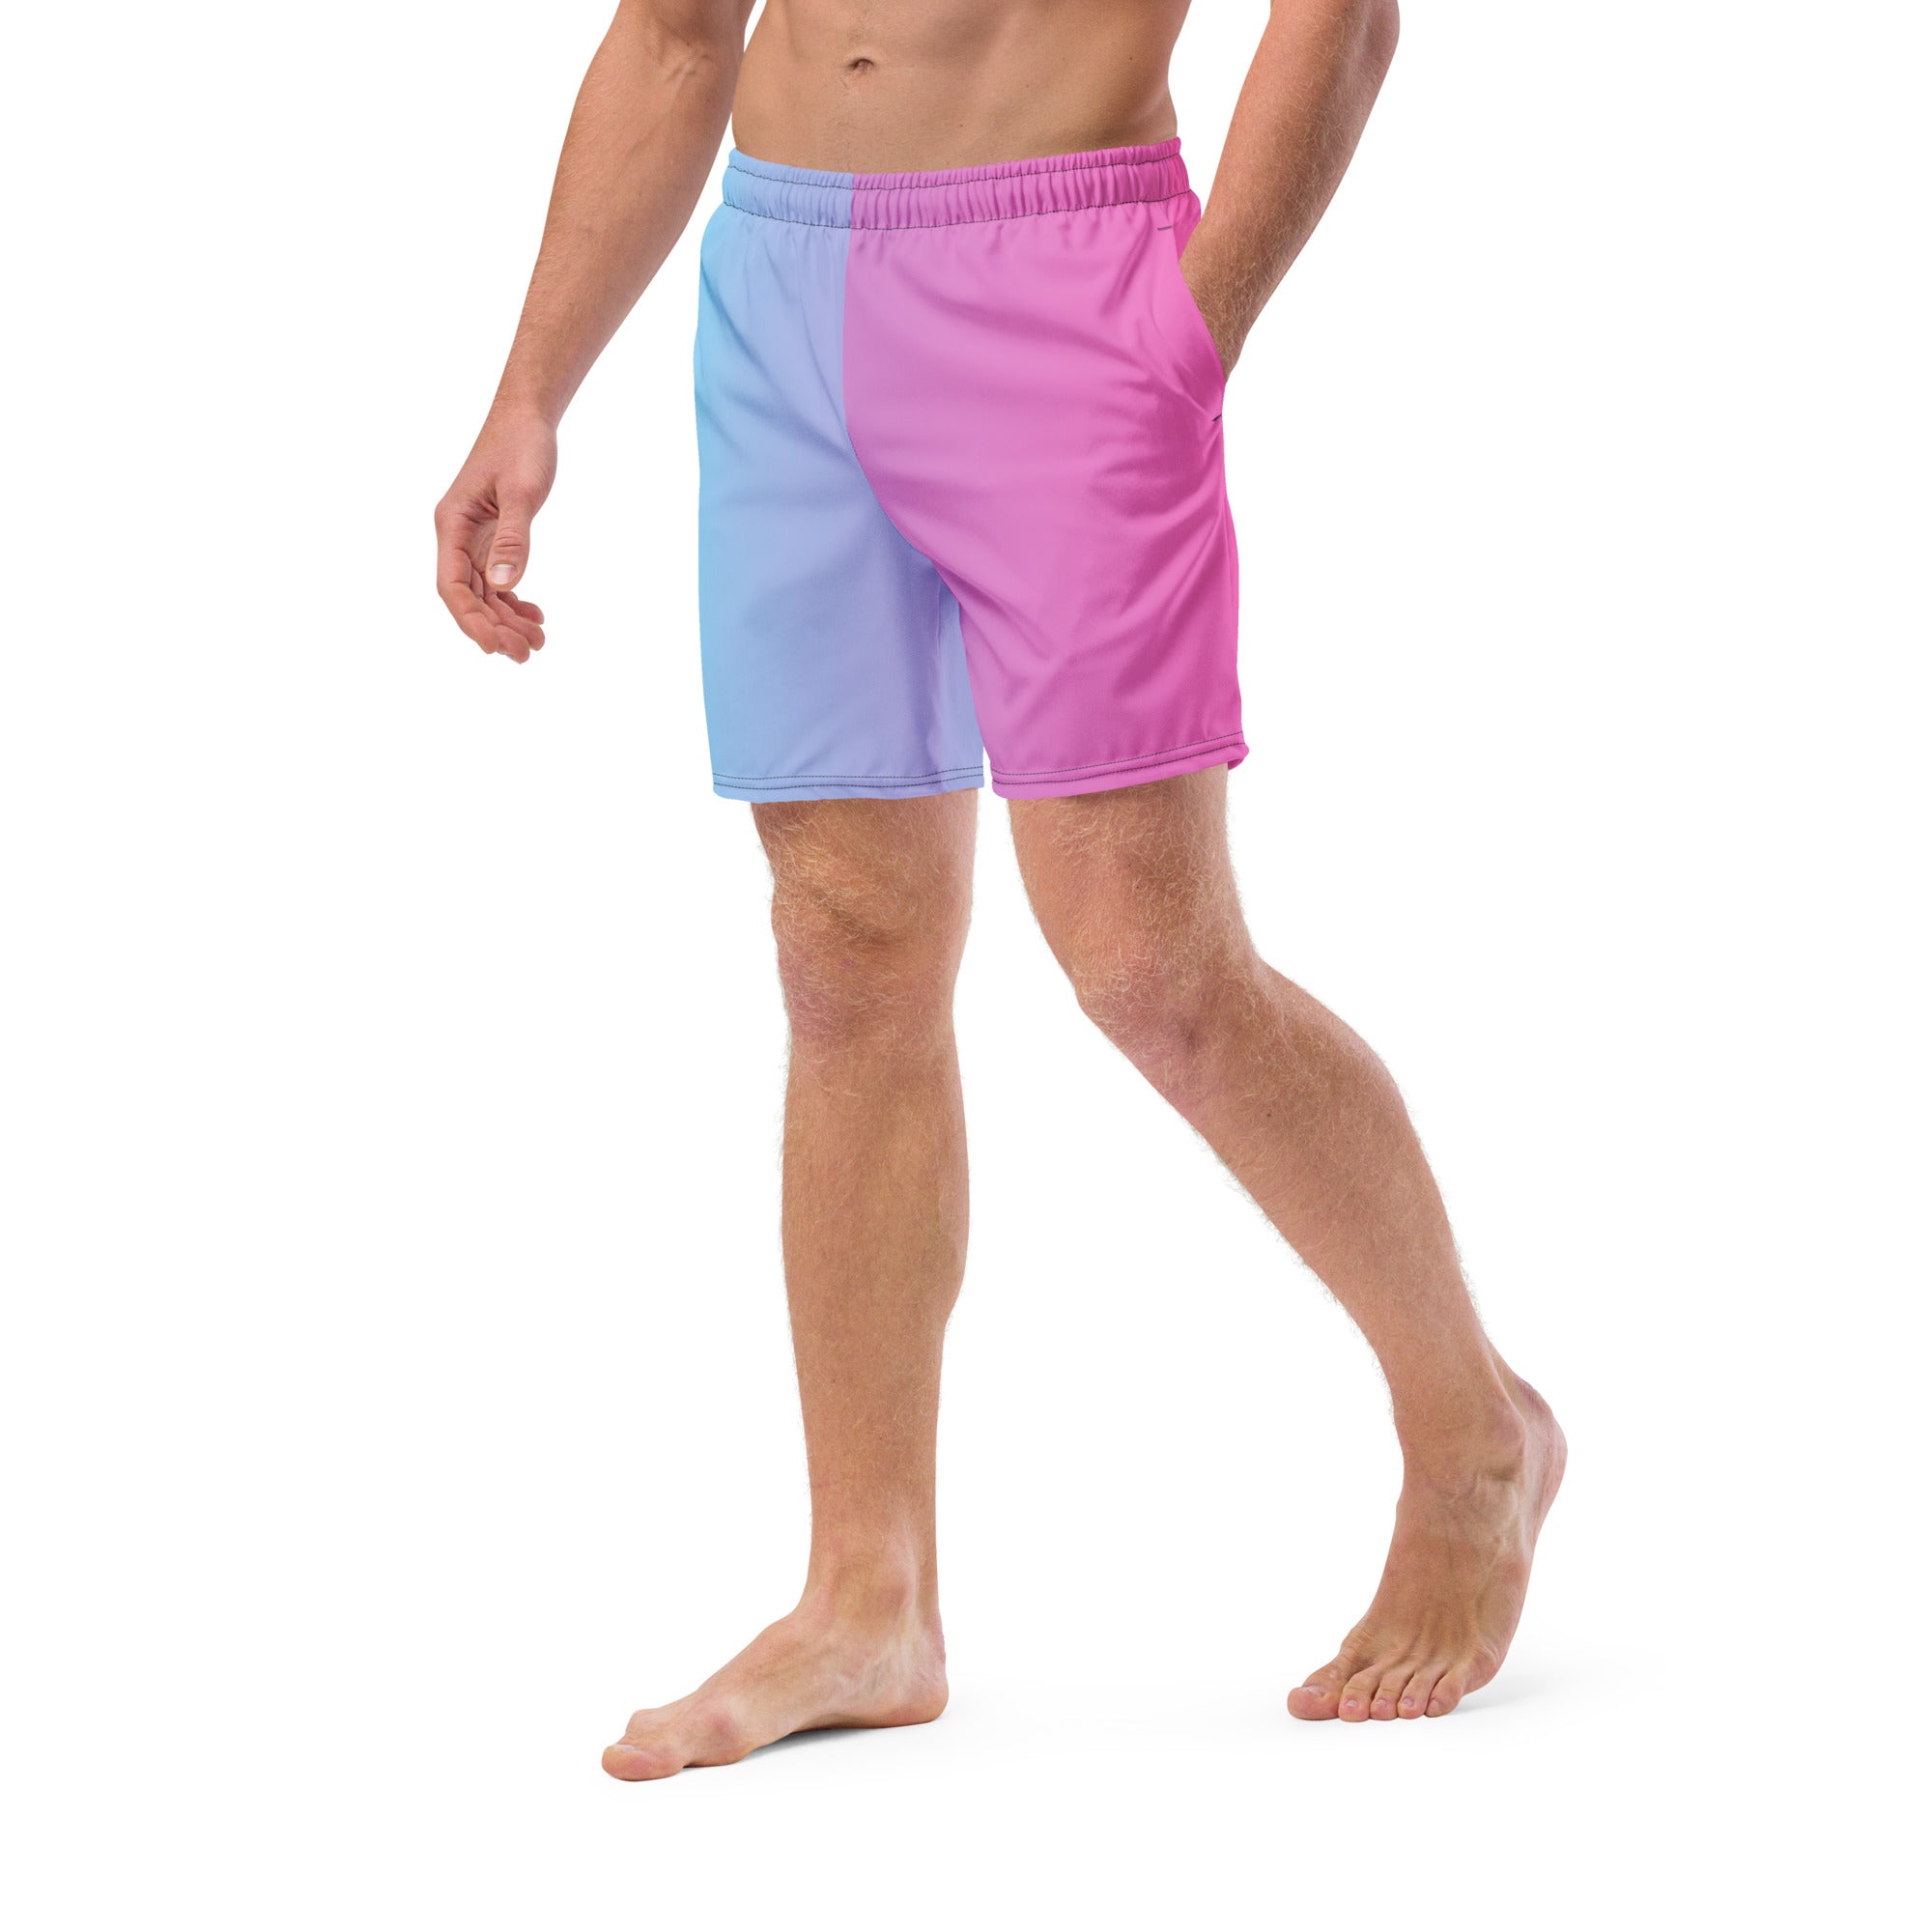 'Miami Vice' men's swim trunks